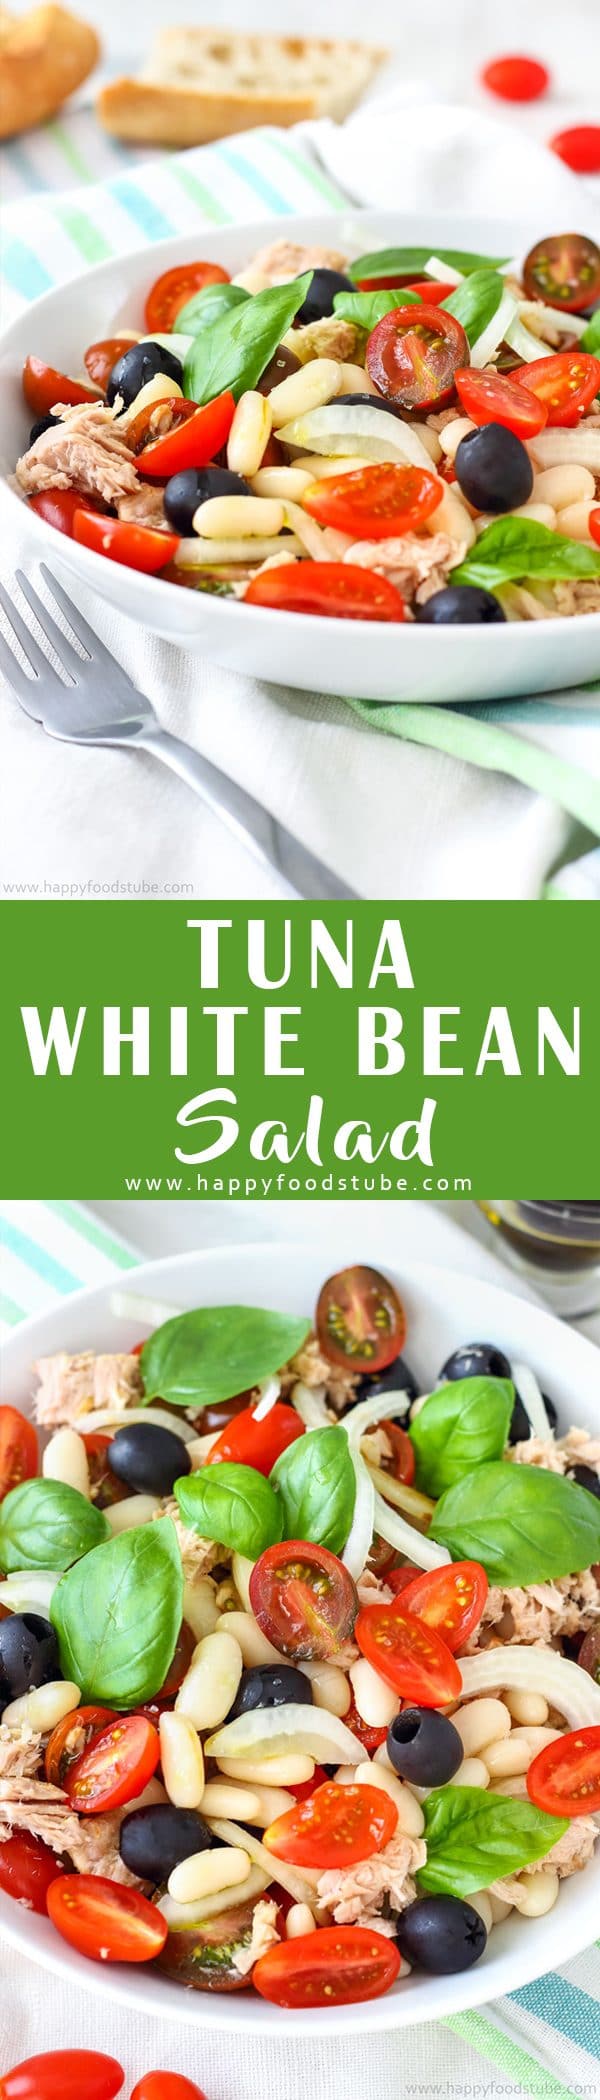 Tuna White Bean Salad Recipe Collage